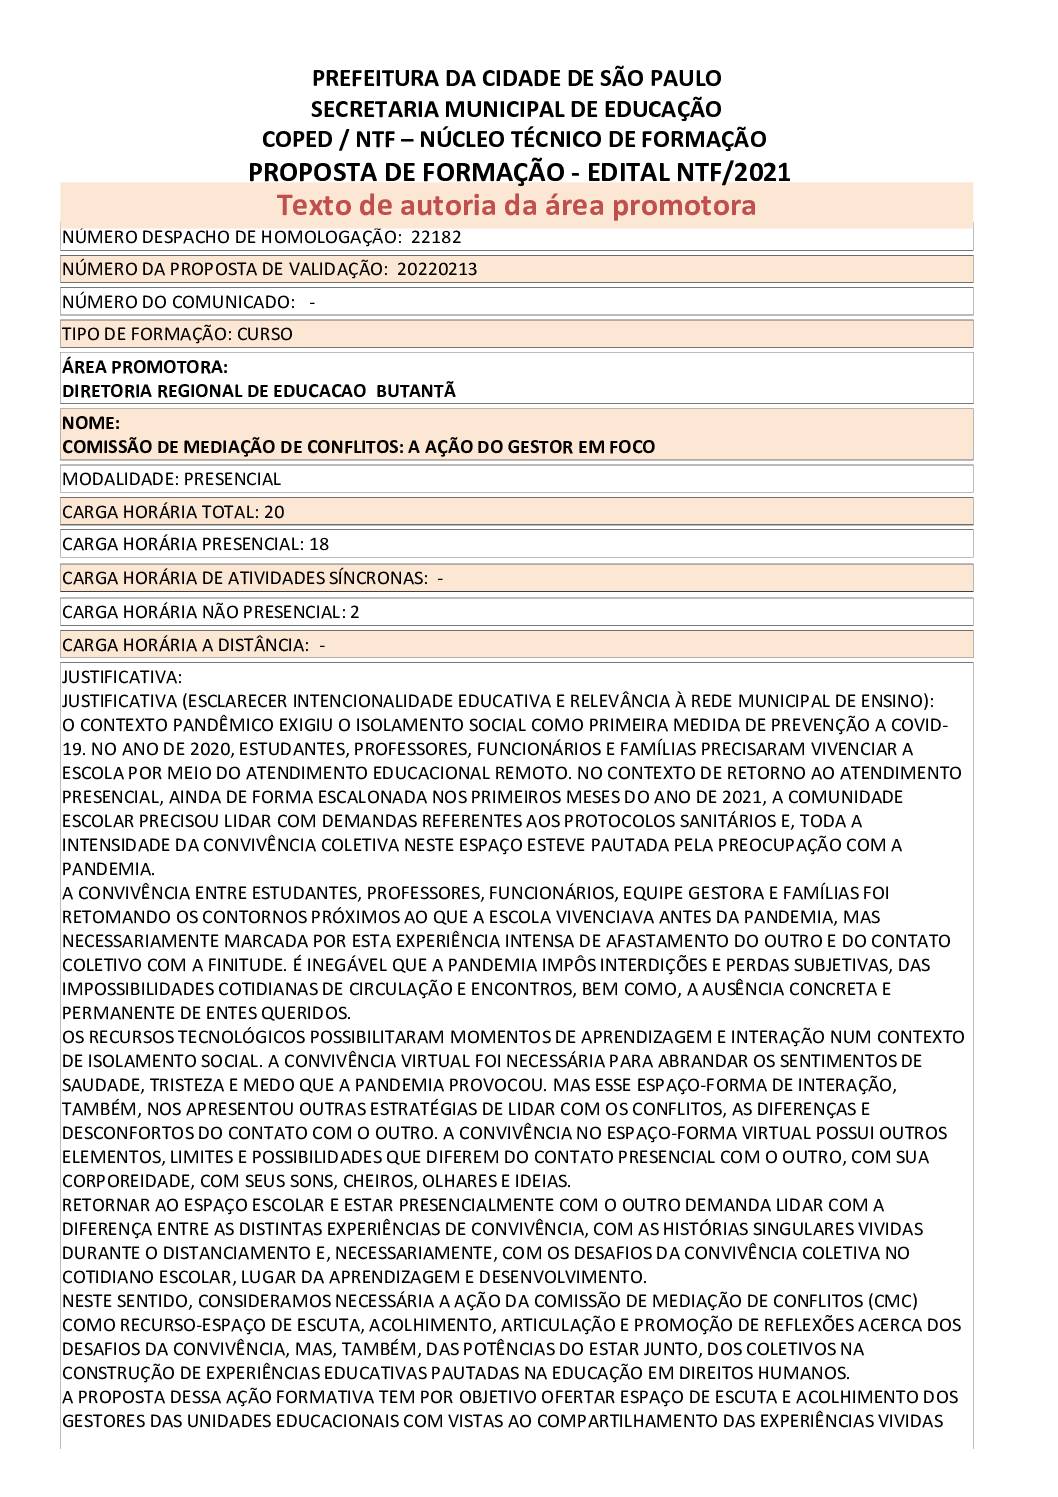 PDF com informações sobre o curso: COMISSÃO DE MEDIAÇÃO DE CONFLITOS: A AÇÃO DO GESTOR EM FOCO